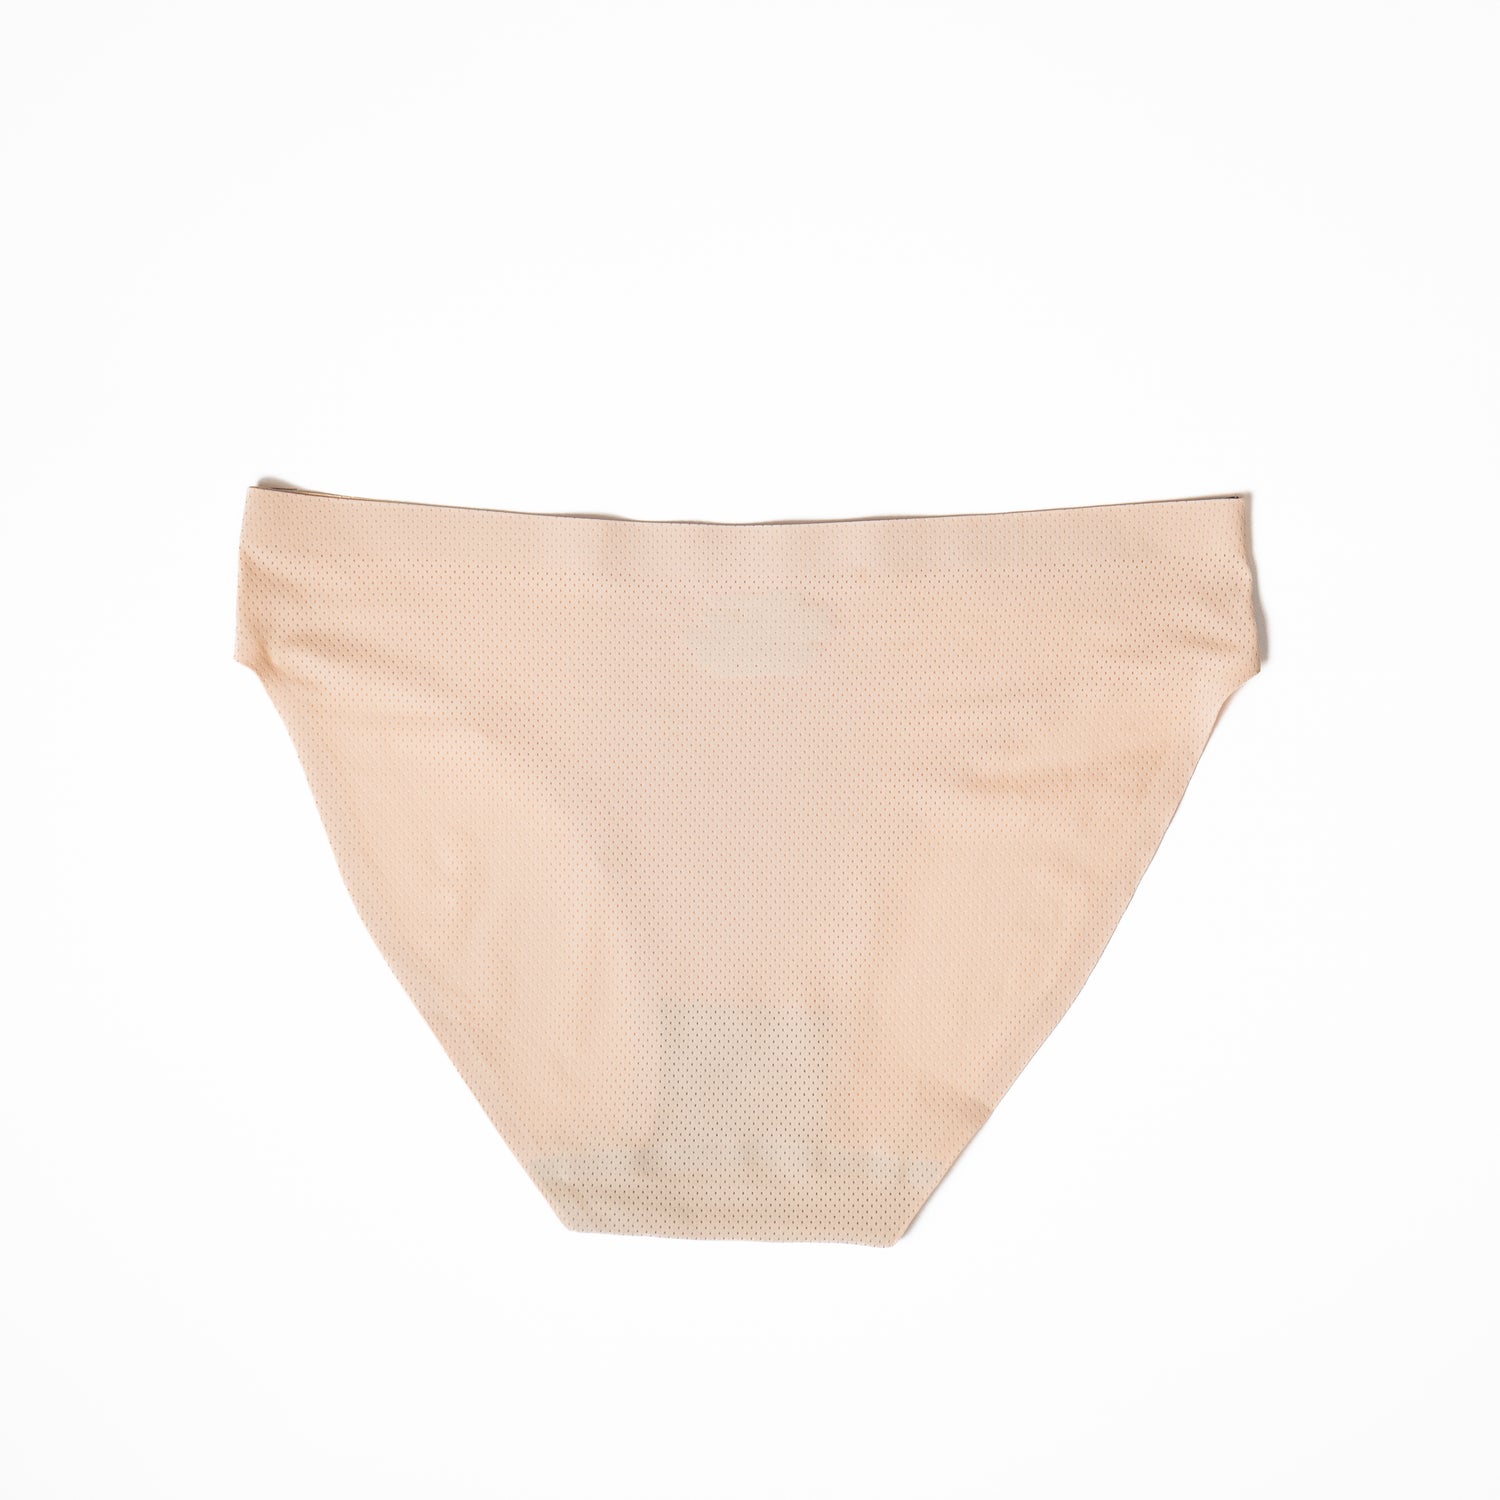 Nylon Panties Size 10 USA 20 au NOS -  Sweden